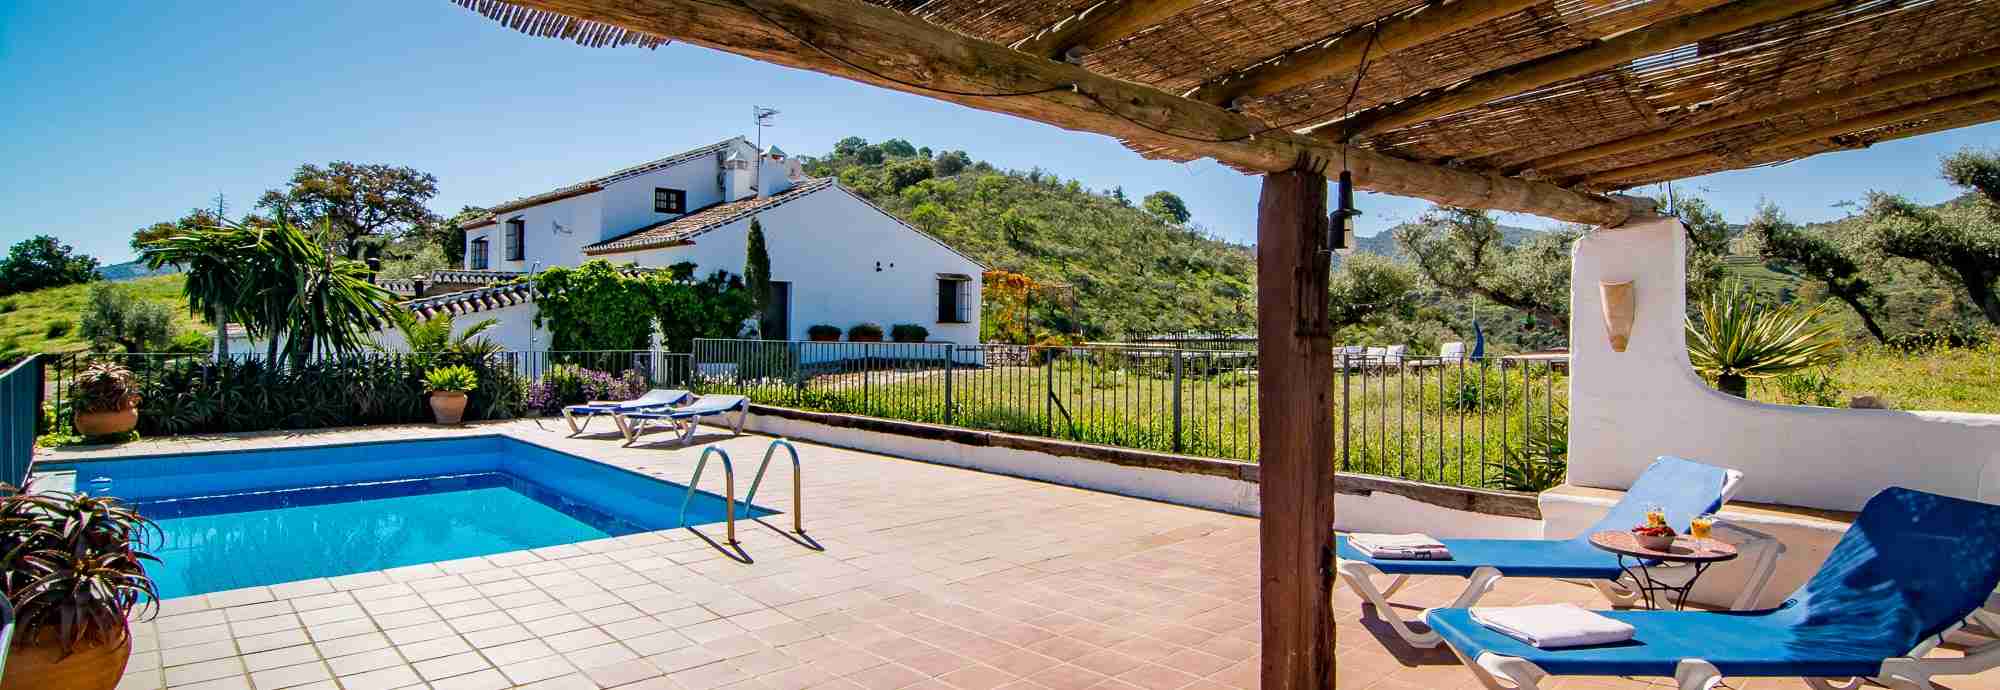 Espléndida villa tradicional andaluza con piscina y cuevas de la Edad del Bronce